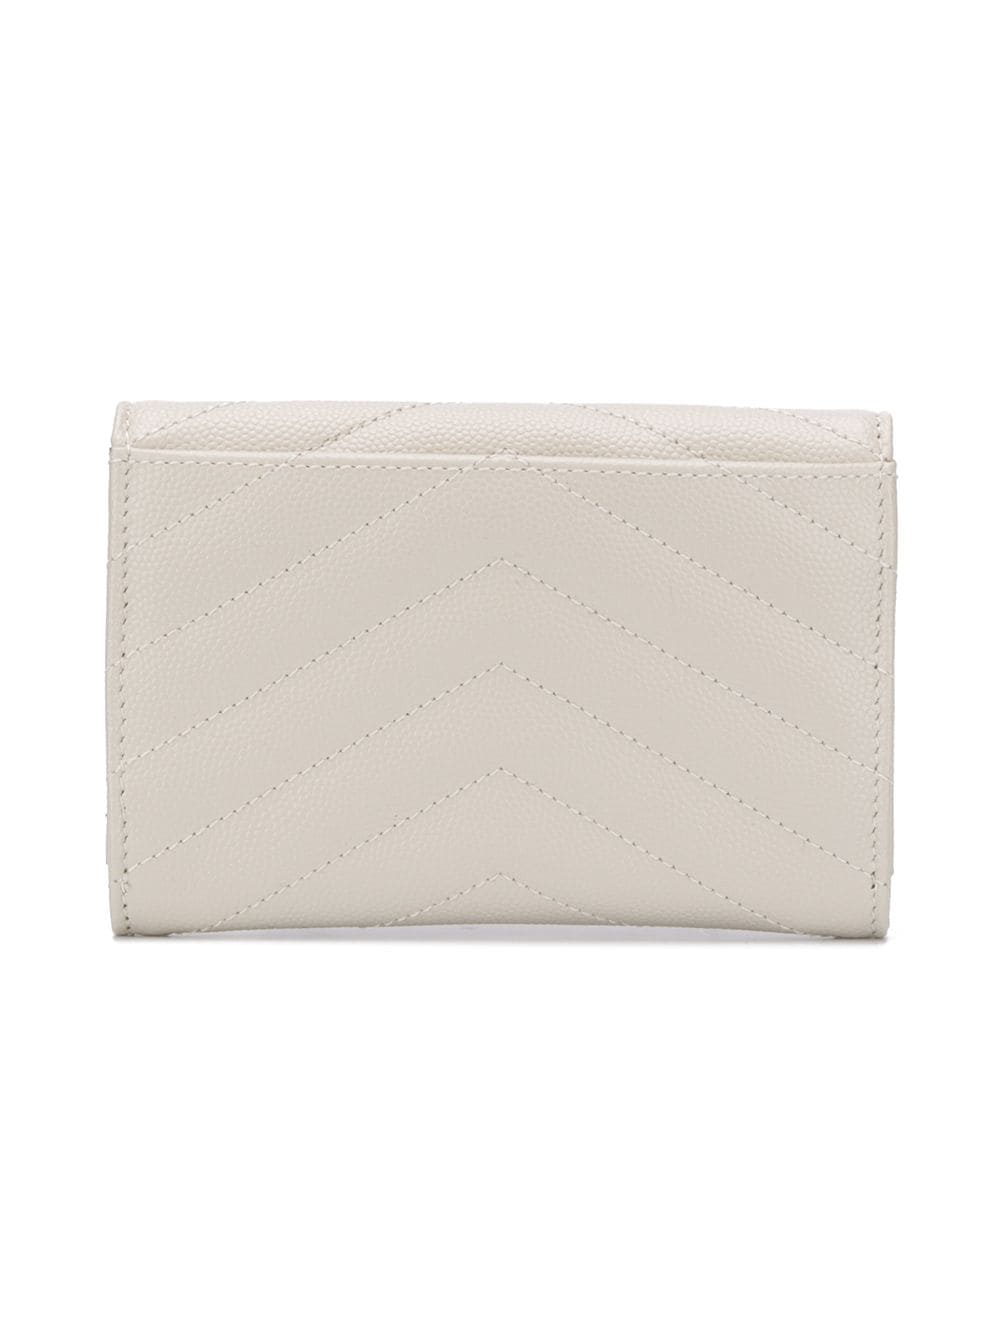 Chloé Small Sense Leather Wallet - Farfetch